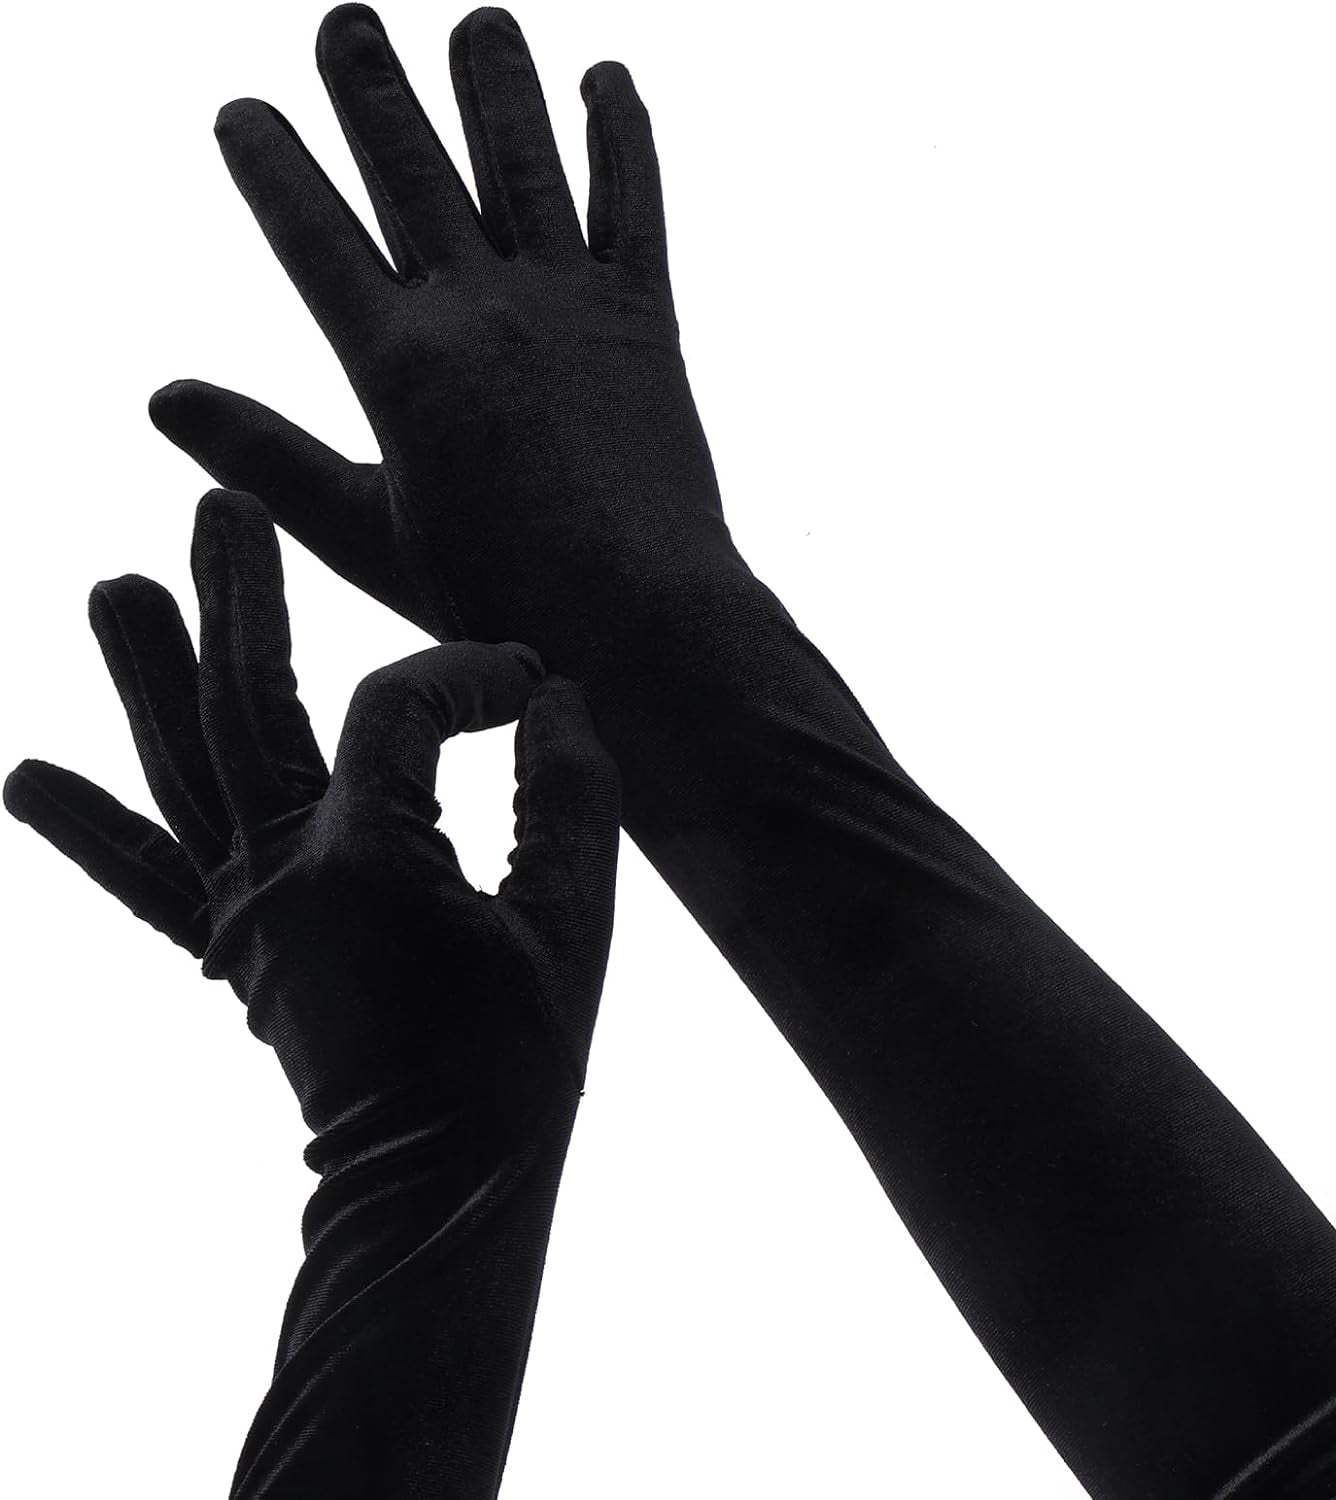 Black Long Velvet Gloves Elbow Length Gloves 1920S Opera Gloves for Women Fancy Long Satin Gloves Black Bridal Gloves Wedding Gloves Dress Gloves Flapper Opera Party Evening Gloves